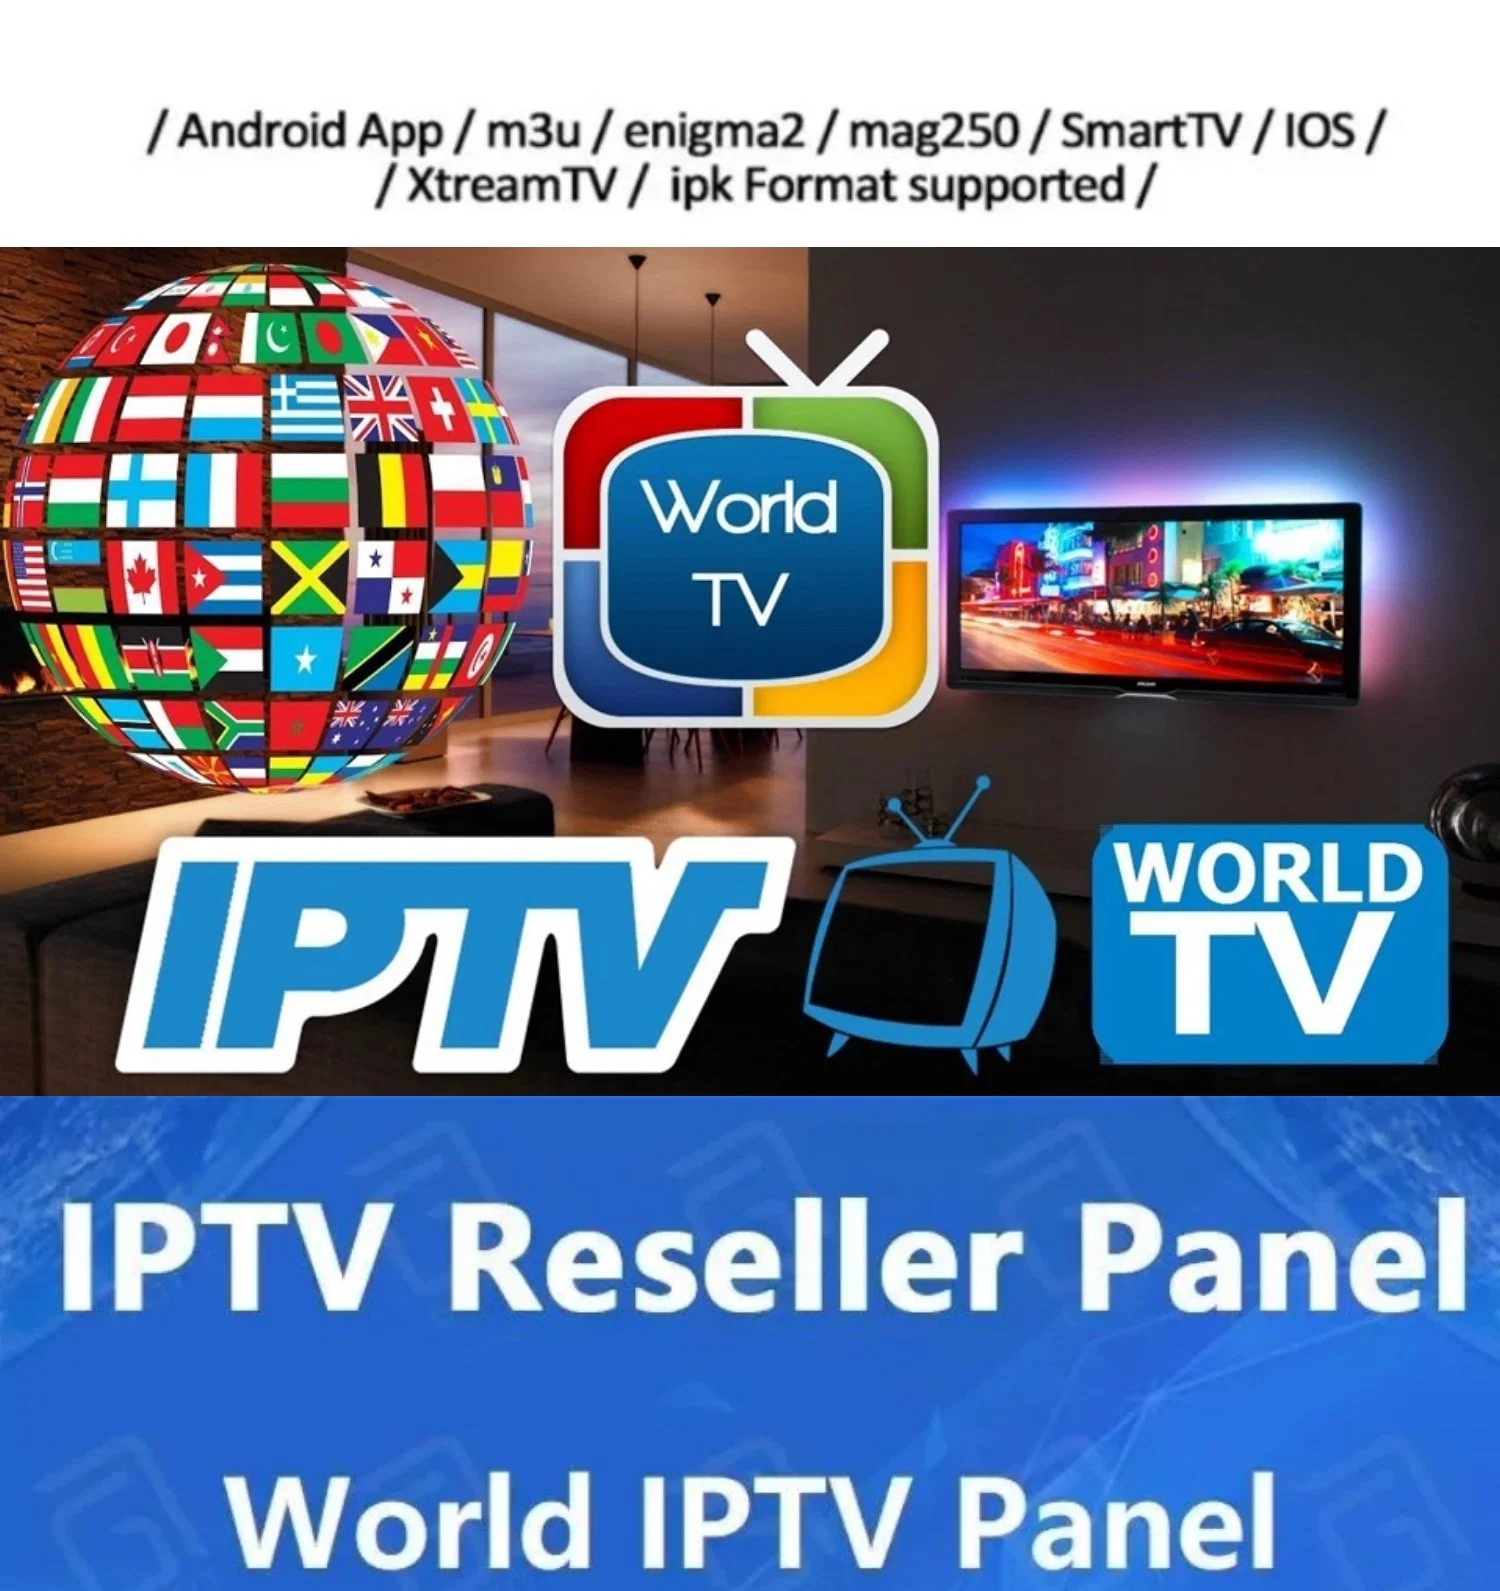 بيع خدمة IPTV على الإنترنت في سويسرا IPTV سويسرا M3U أسبانيا أوروبا تلفزيون ألمانيا IPTV بشاشة مسطحة أفضل تلفزيون ذكي عبر الإنترنت عالم اختبار مجاني نظام IPTV مستقر يعمل بنظام التشغيل Android في السوق